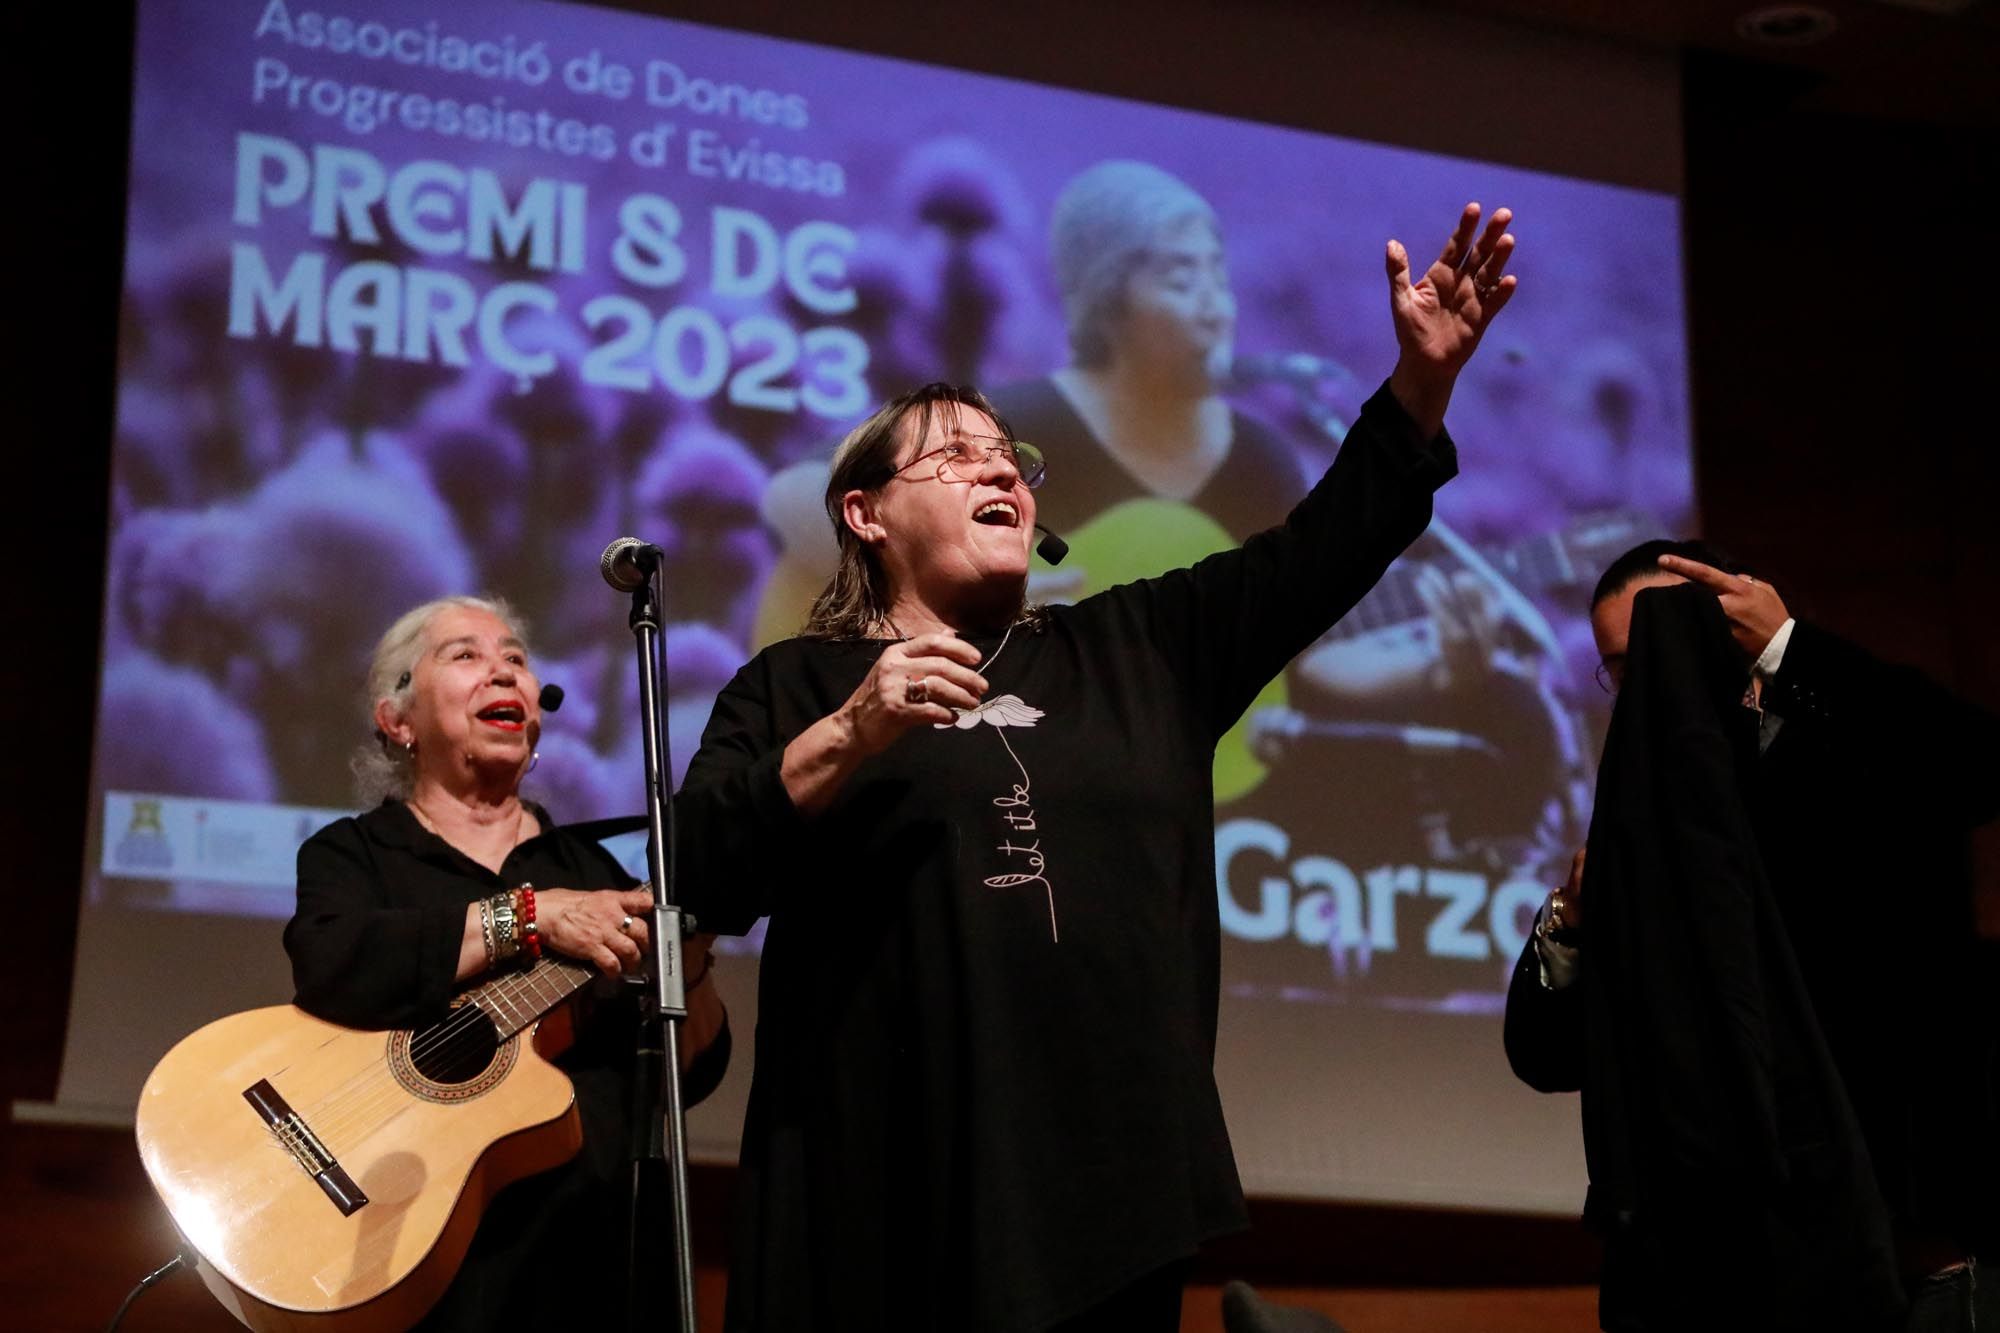 Premio 8 de Marzo en Ibiza a Pilar Garzón